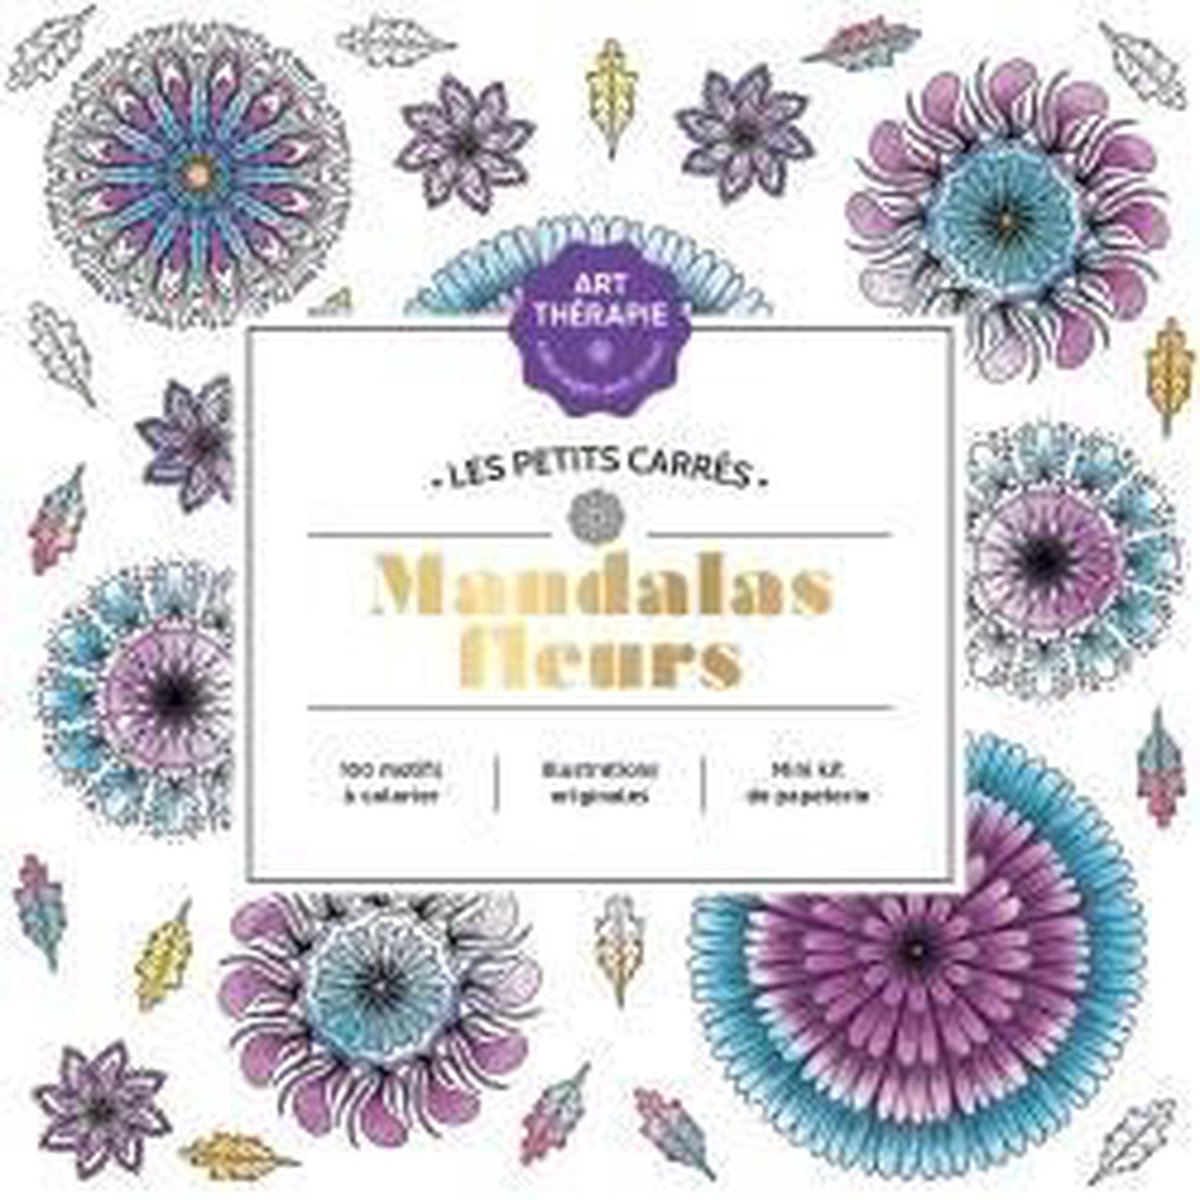 LES PETITS CARRES ART-THERAPIE Mandalas Fleurs - Kleurboek voor volwassenen